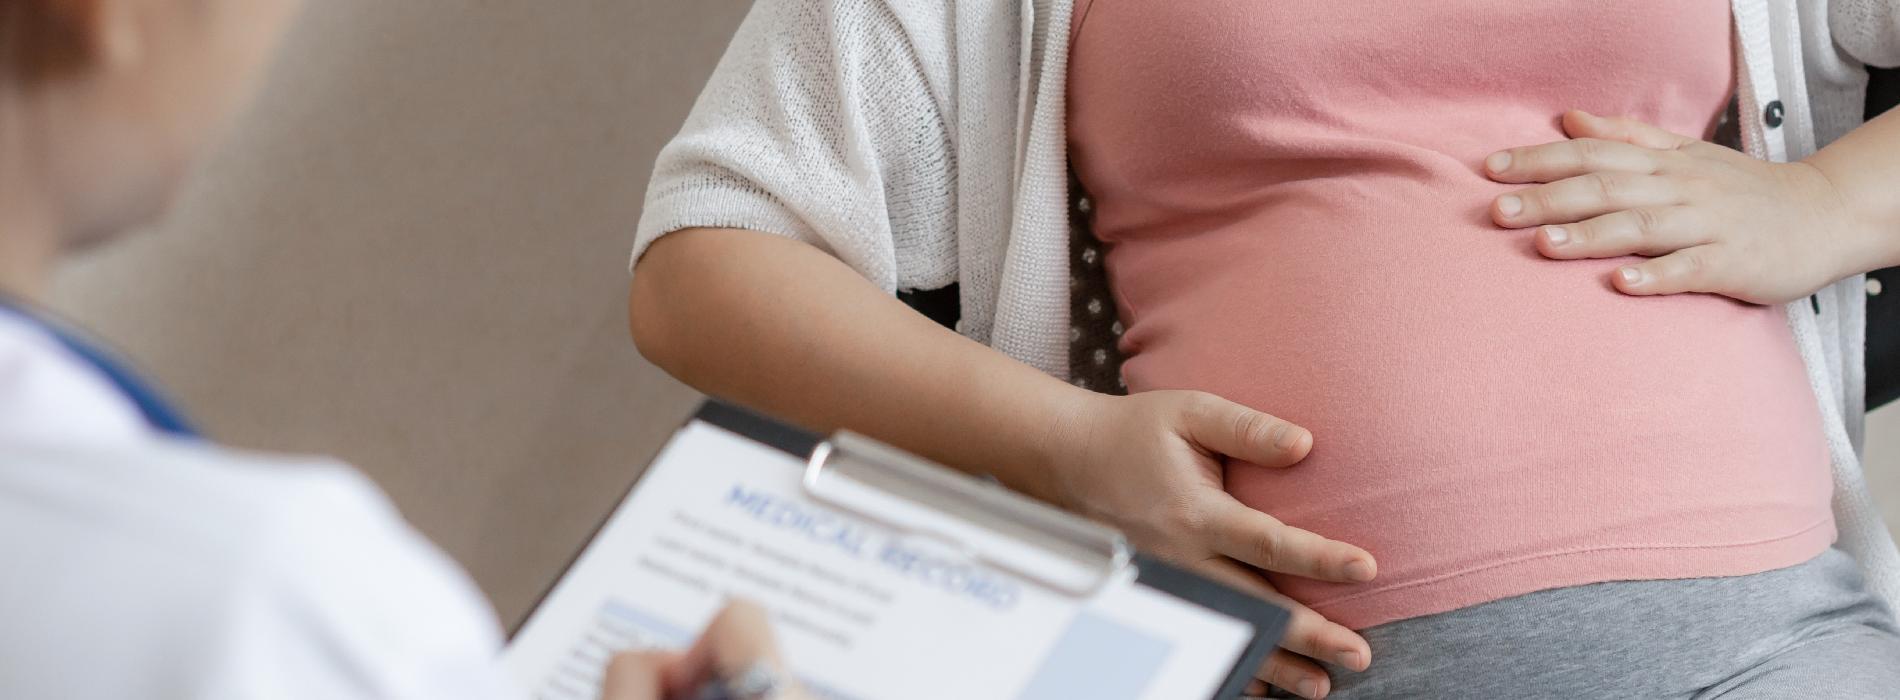 Ile kosztuje badanie prenatalne?